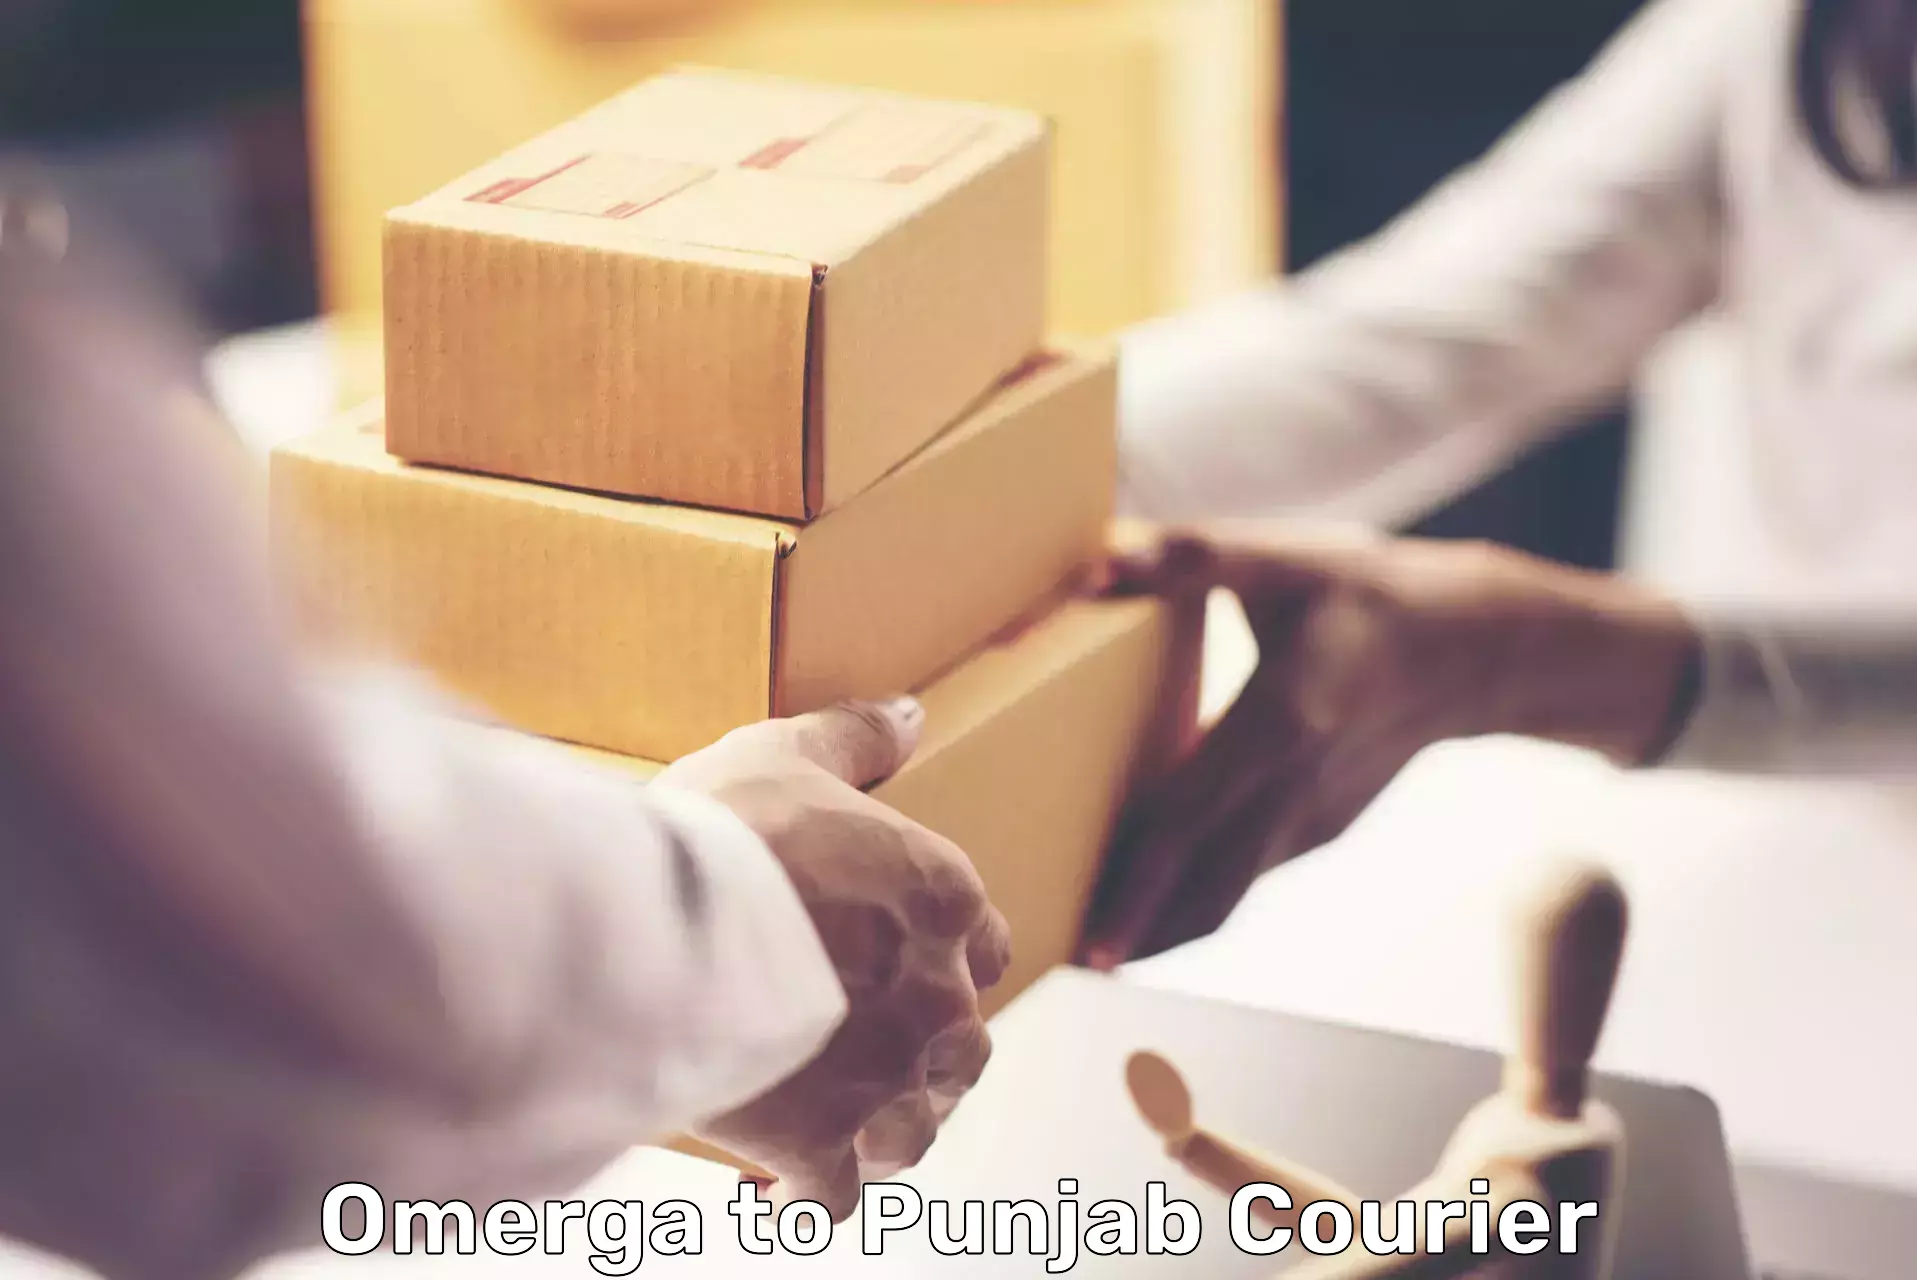 Secure packaging in Omerga to Zirakpur